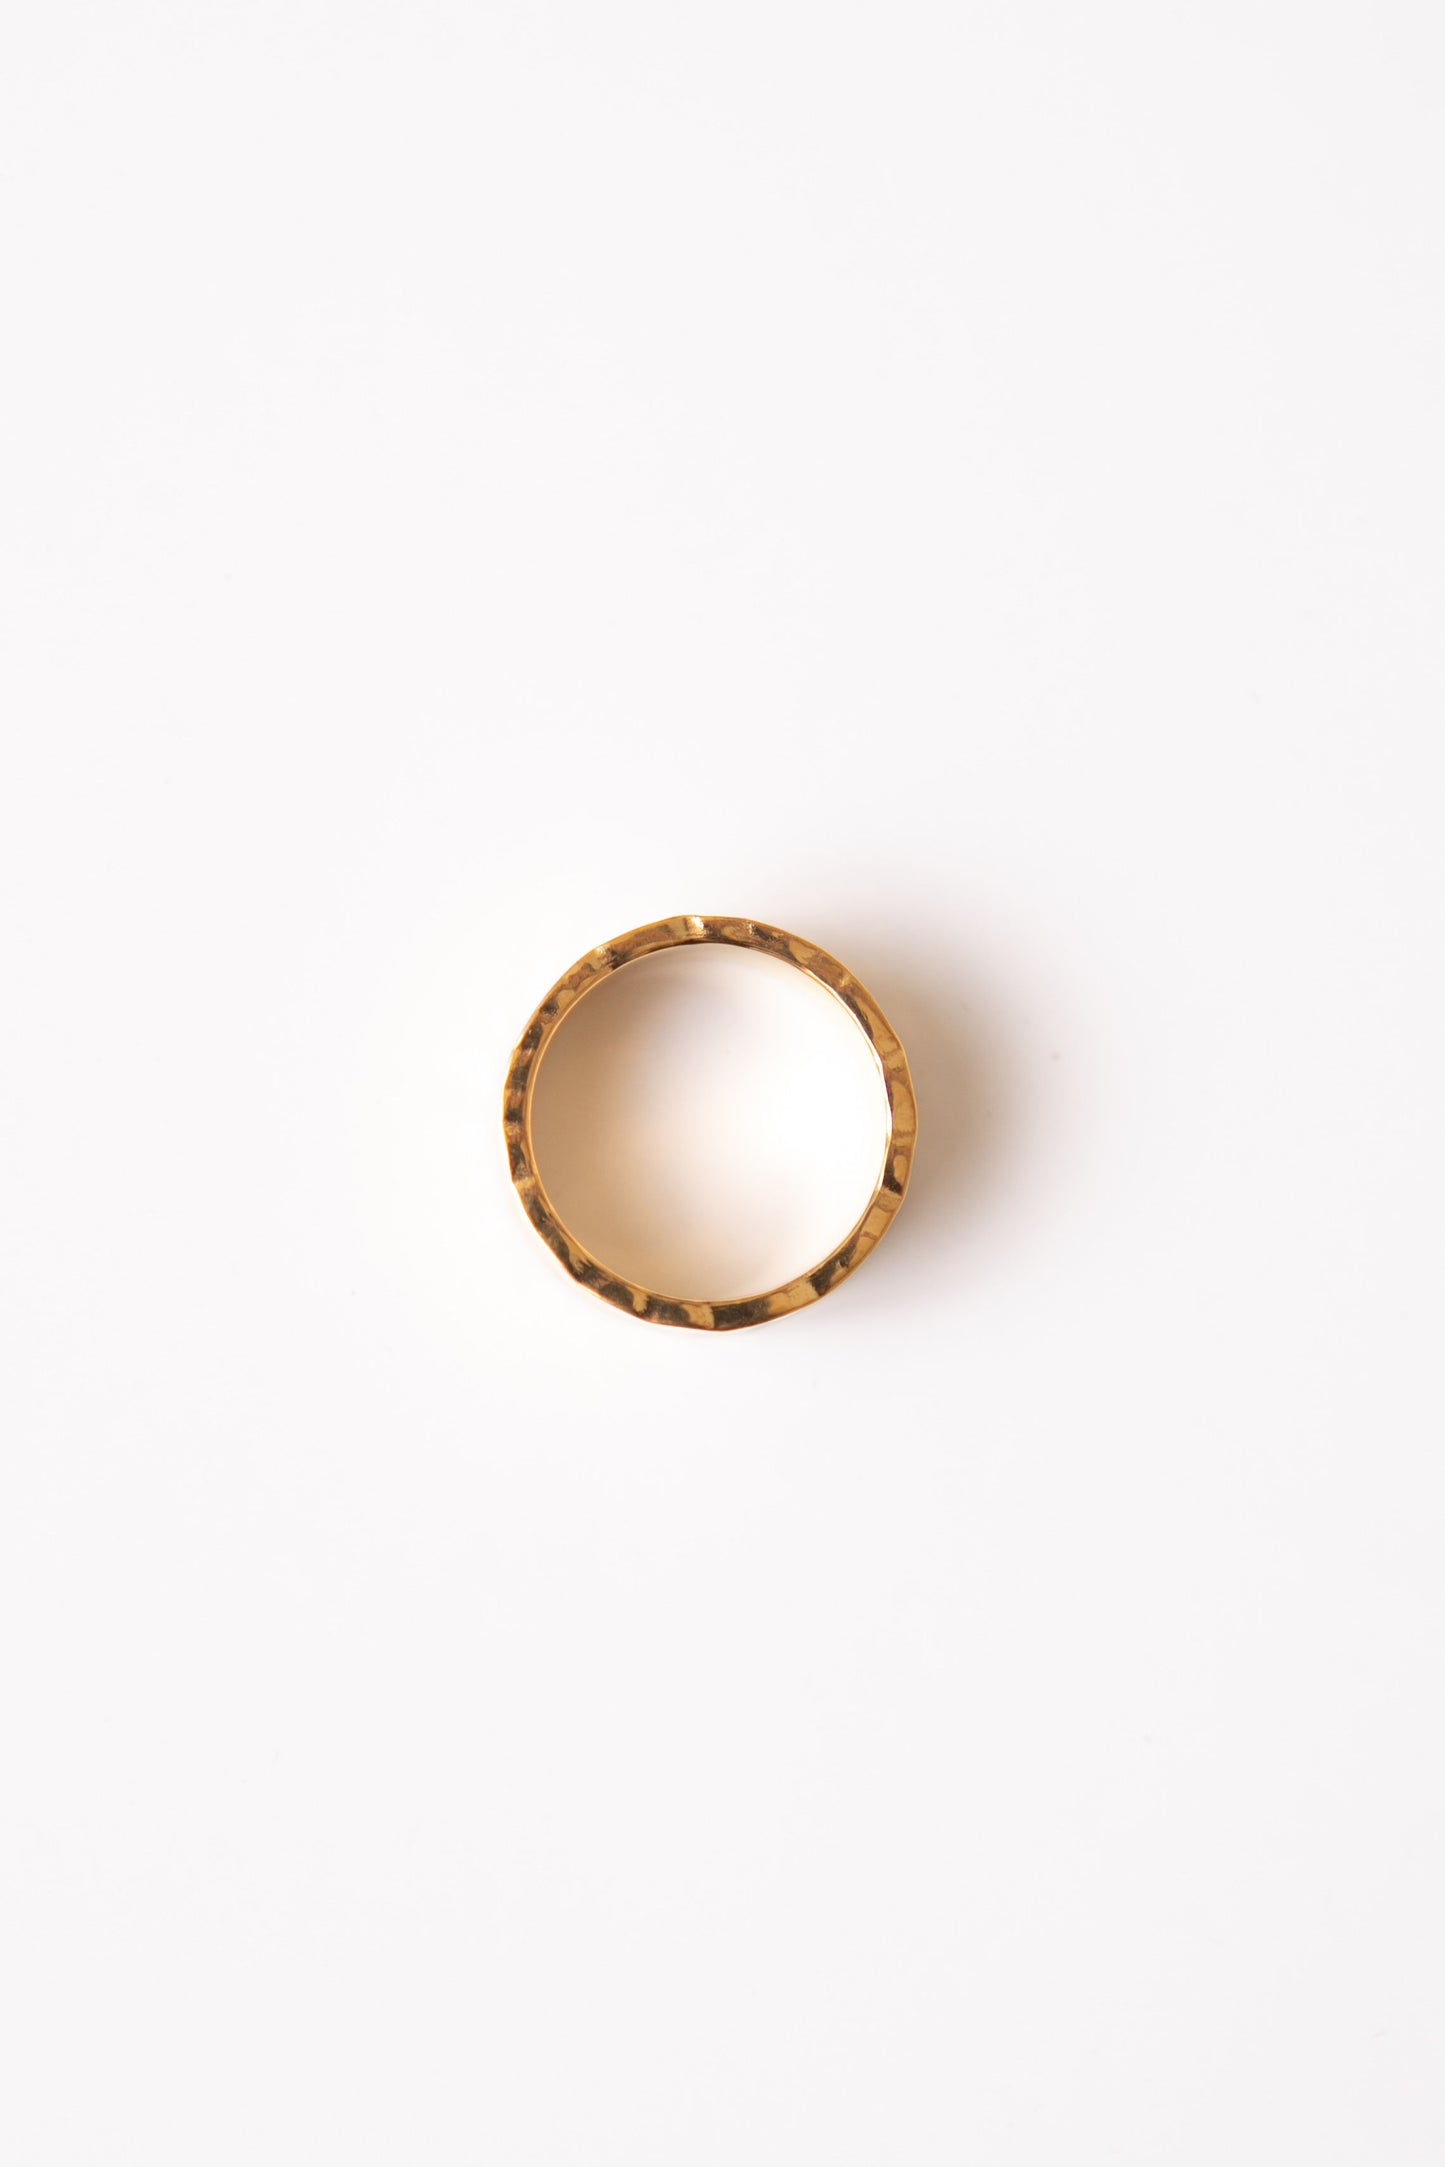 Ankareeda - Hammered Gold Band Waterproof Ring